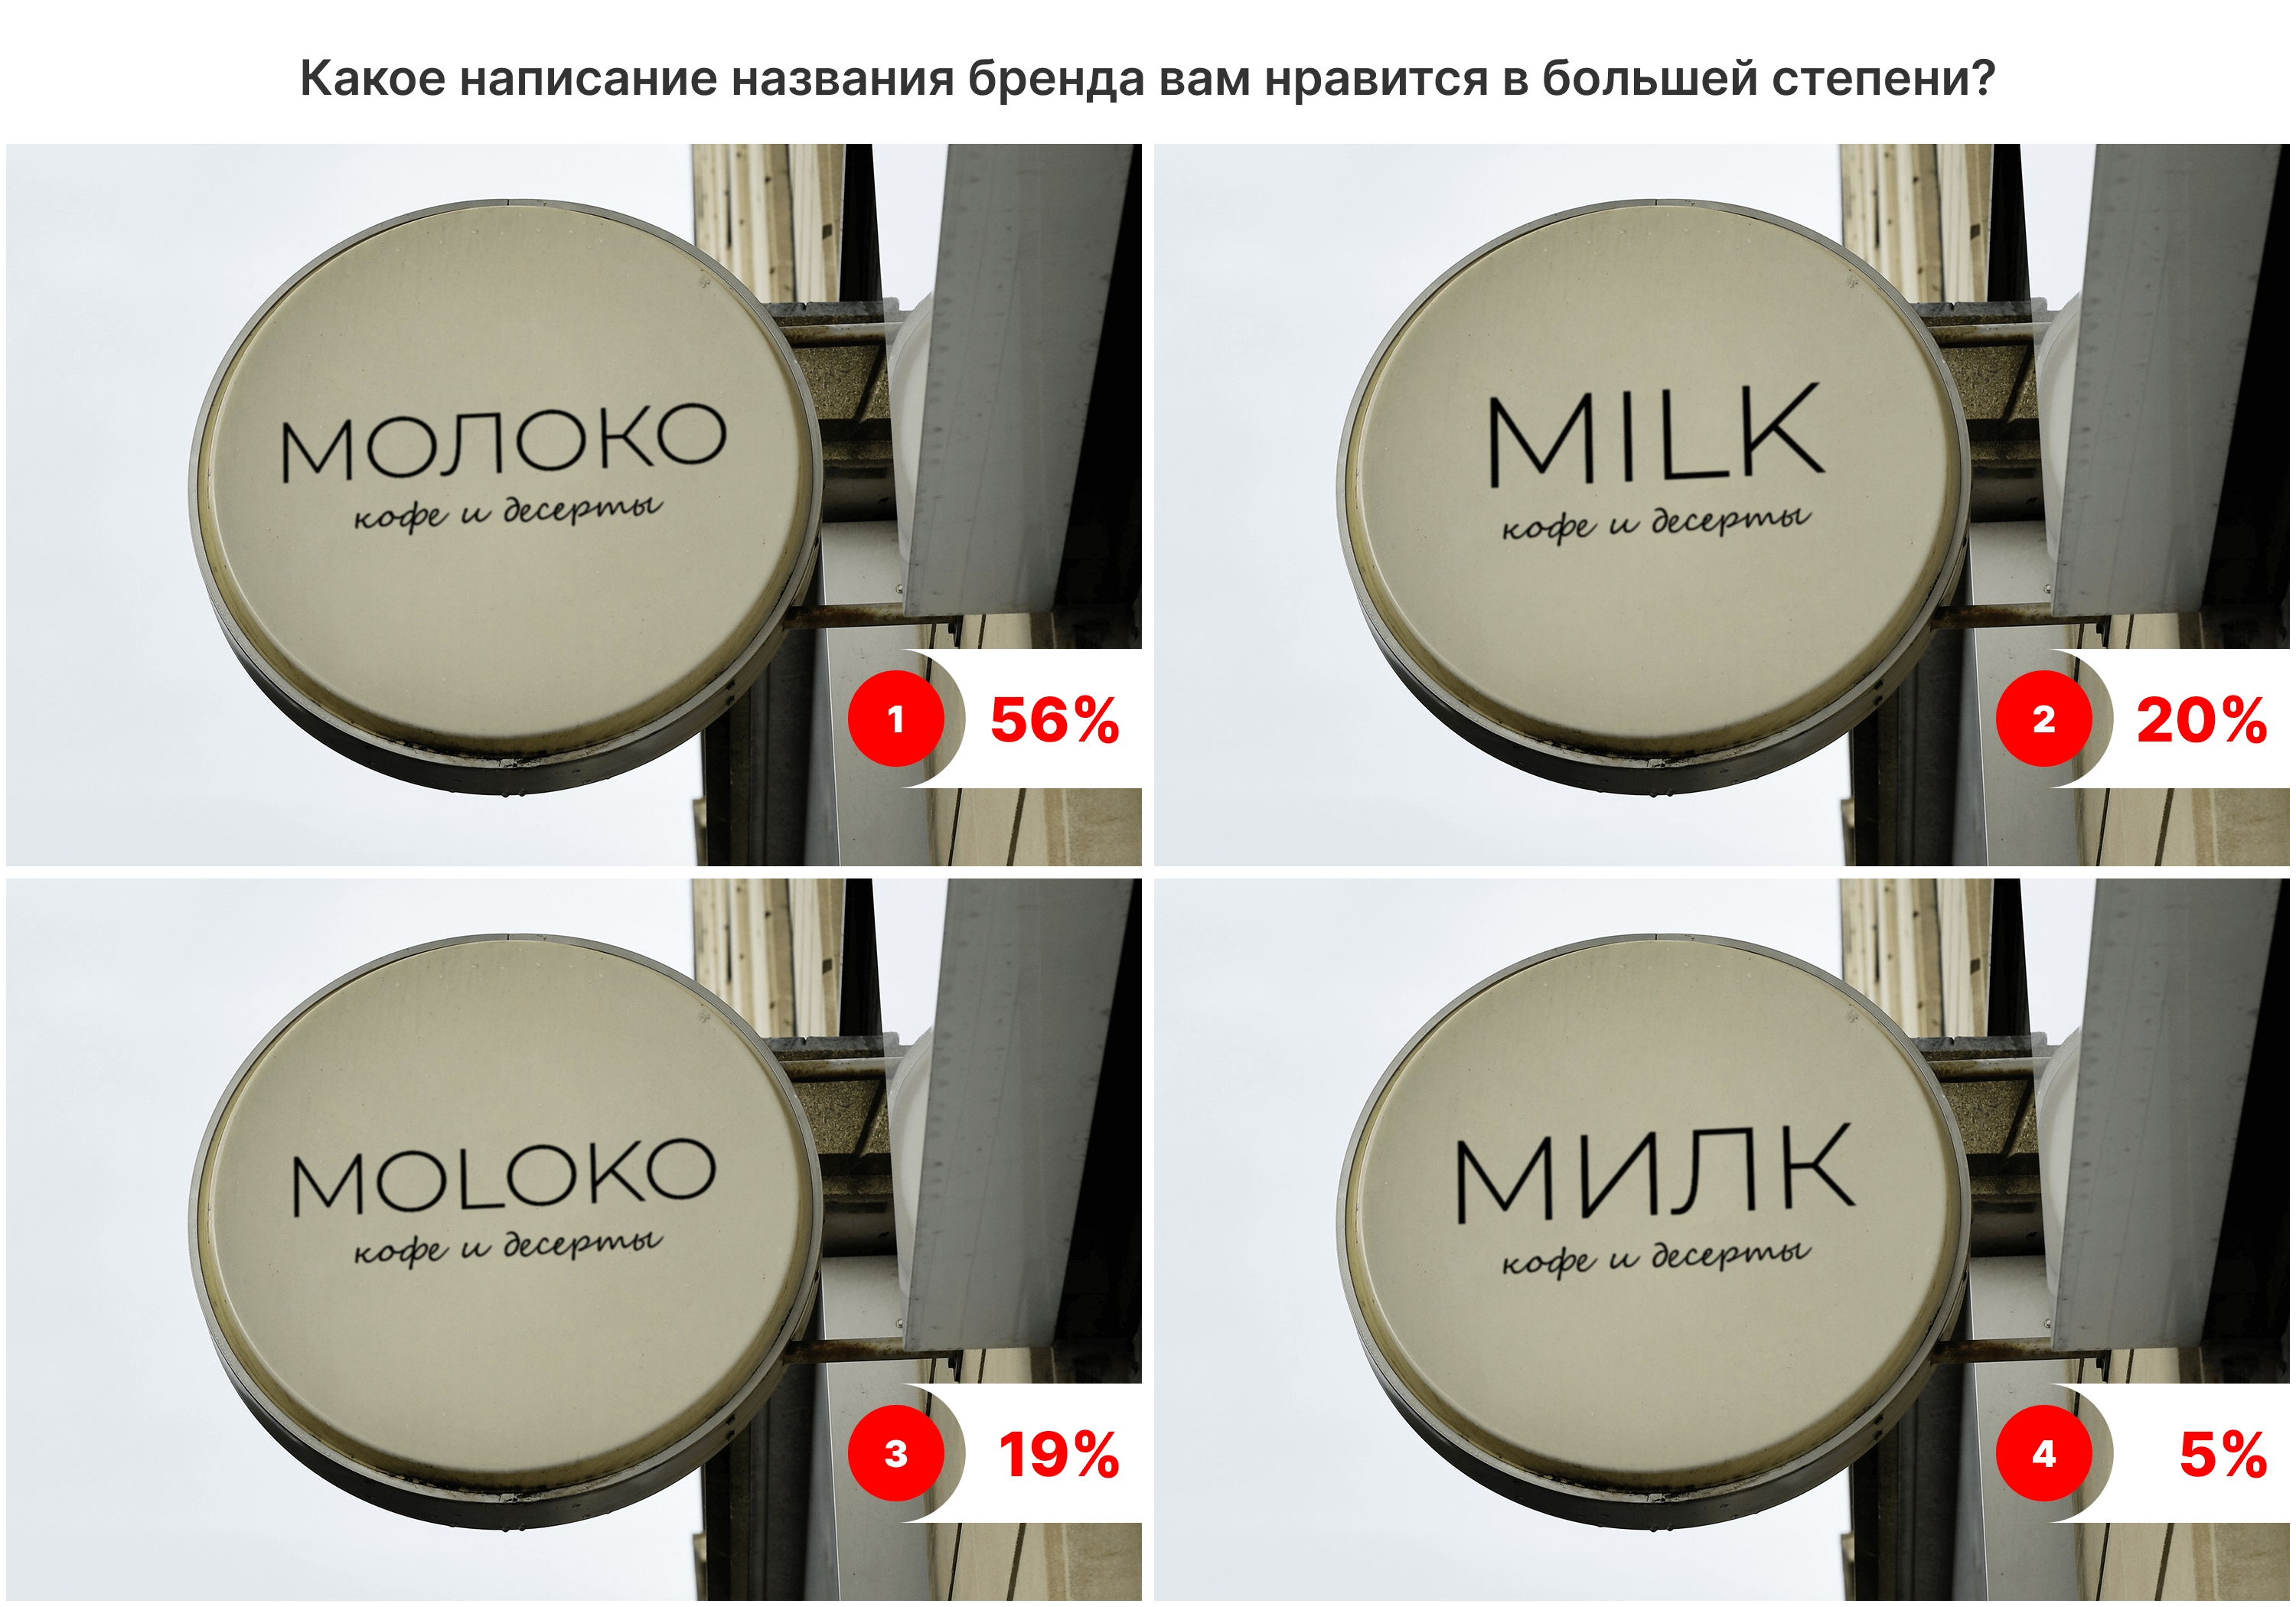 56% больше всего понравился вариант «Молоко»